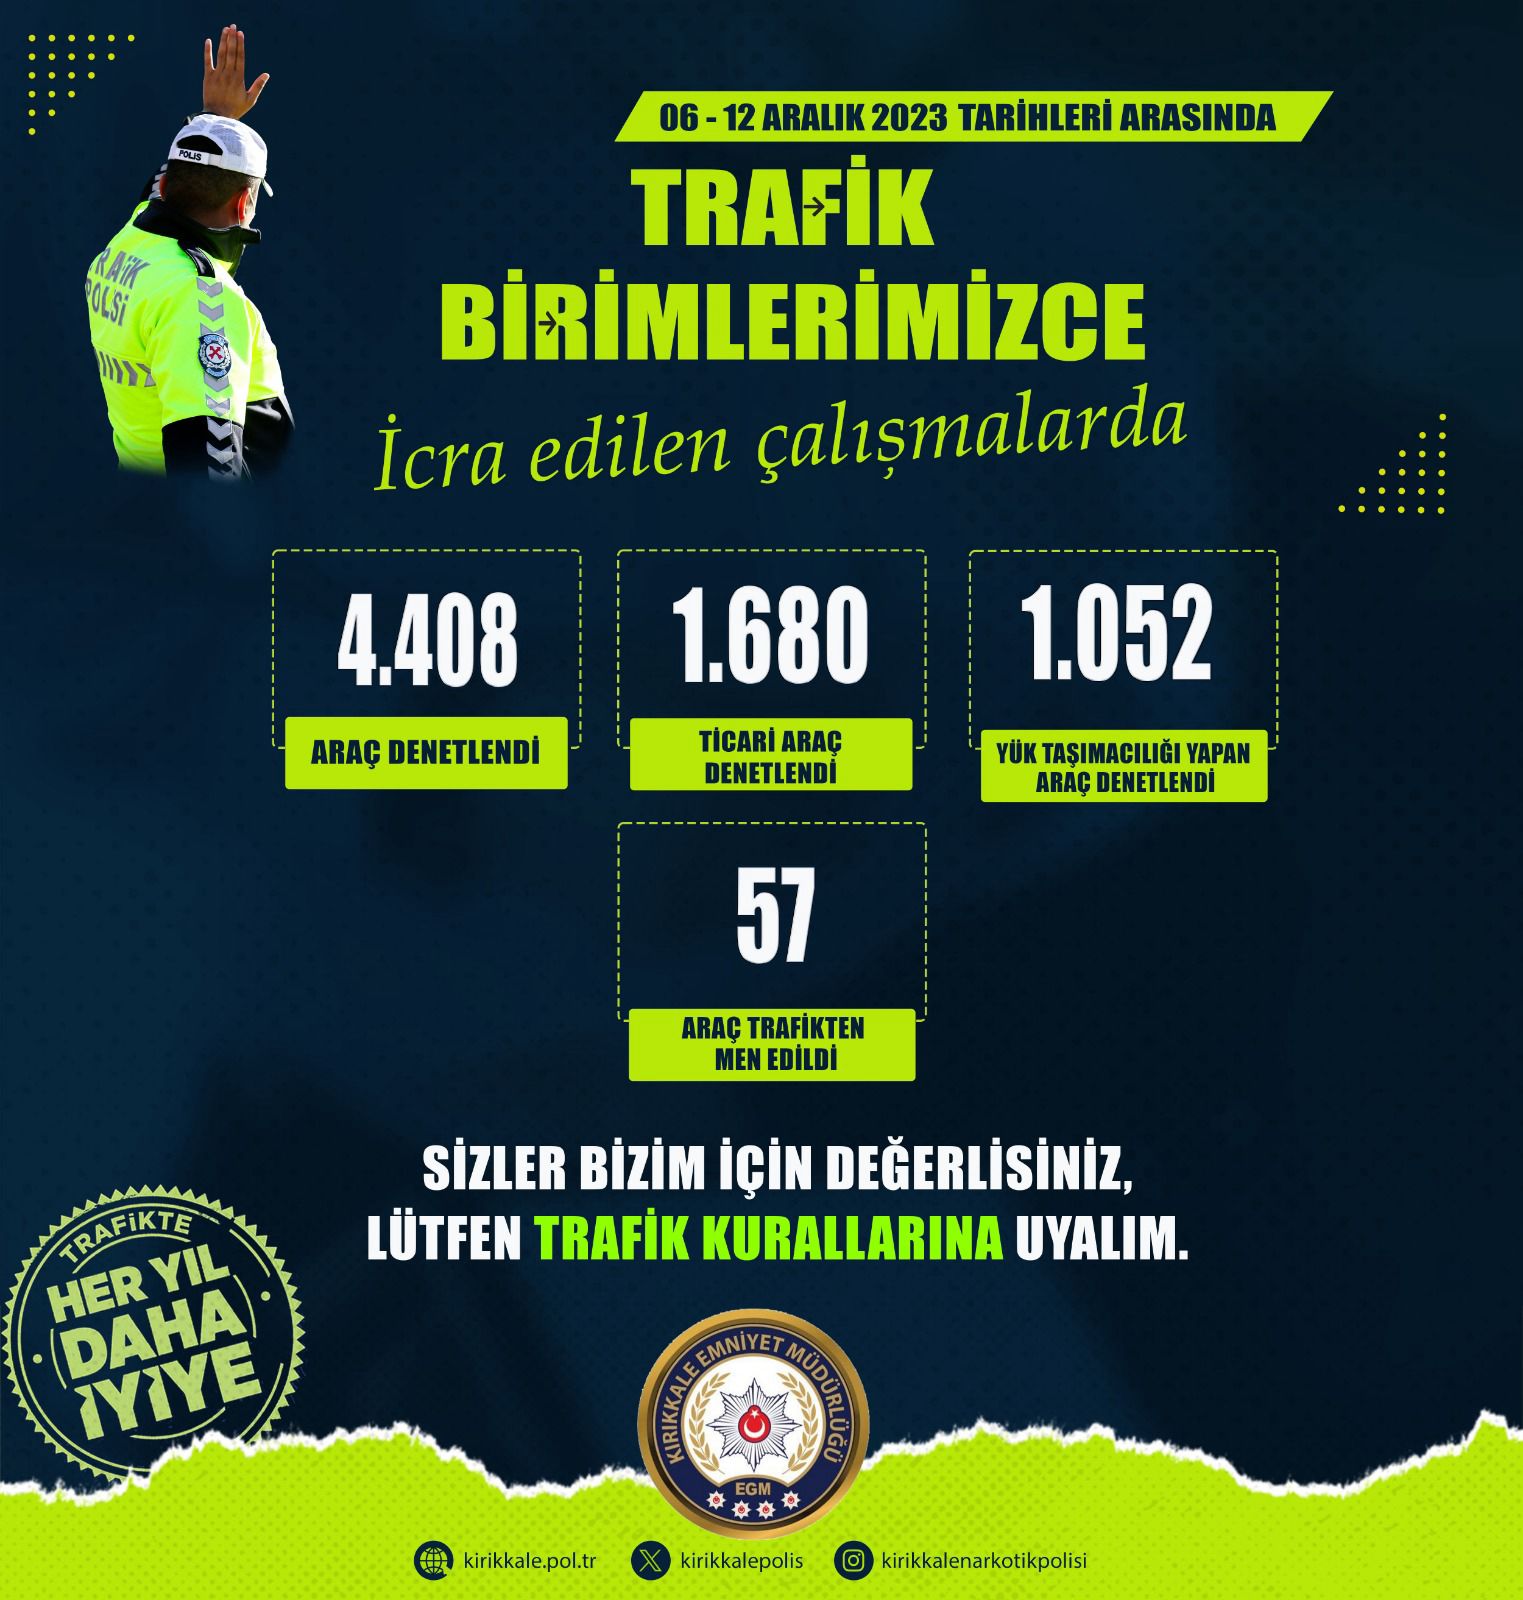 IMG-20231213-WA0001 Kırıkkale'de Çevreye Rahatsızlık Veren 57 Araç Trafikten Men Edildi